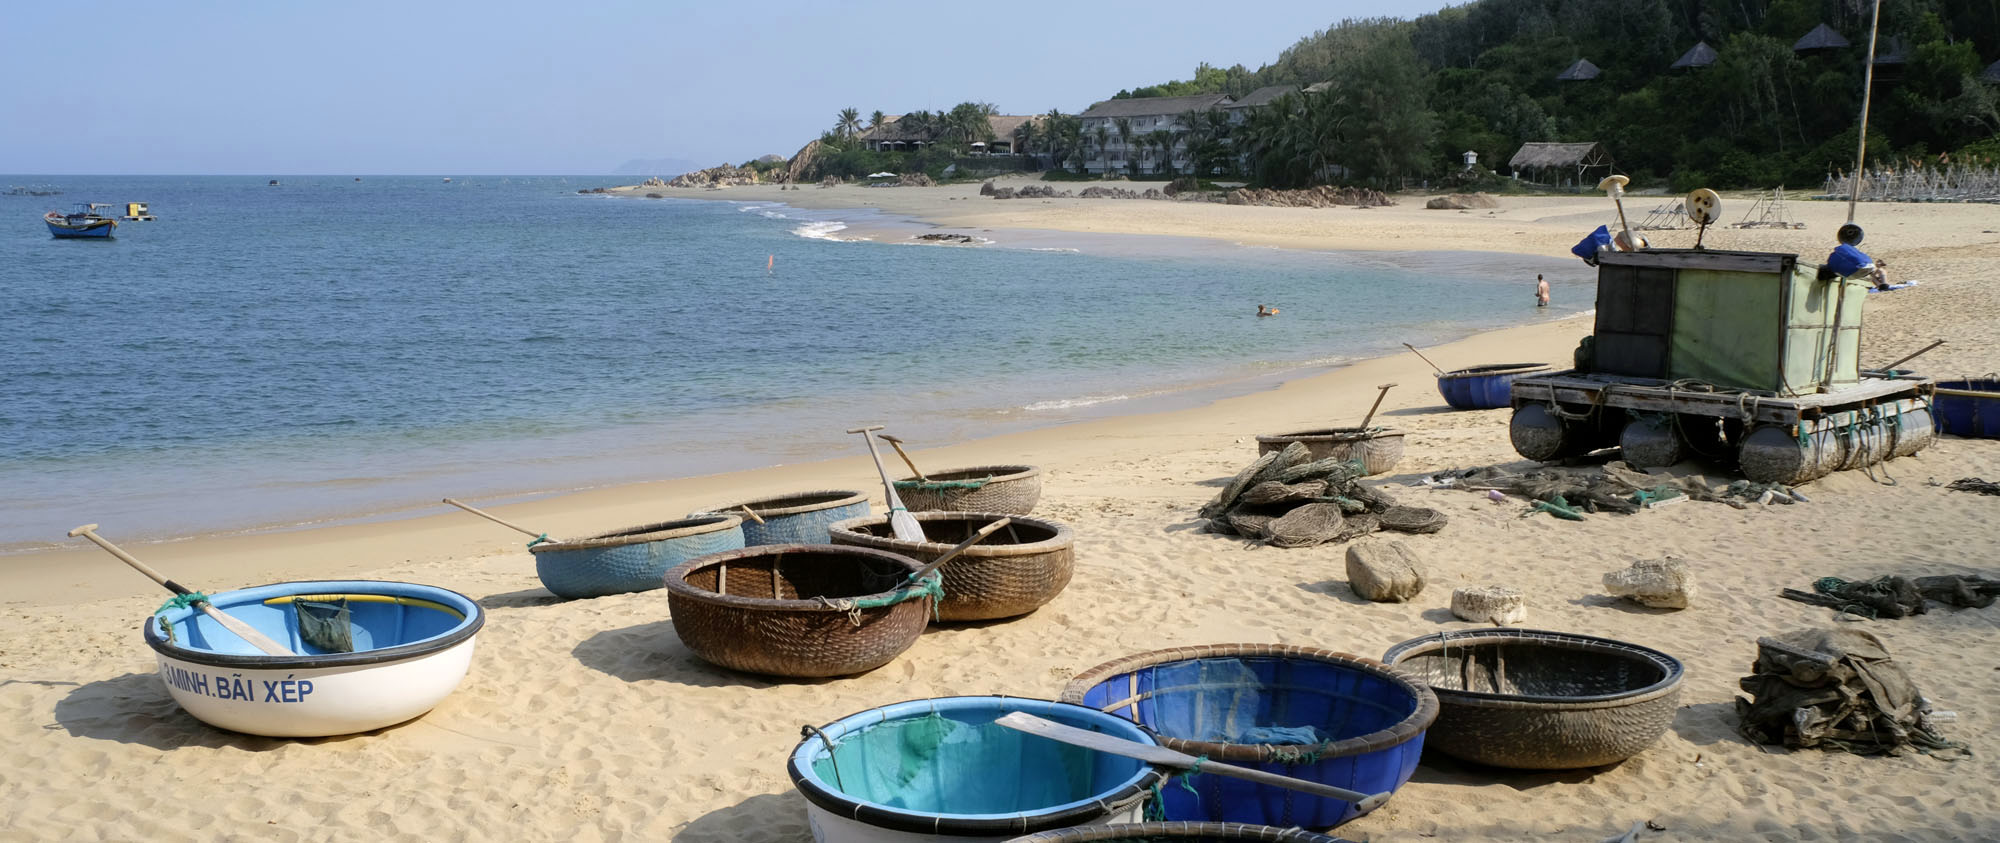 reise-ansichten haven Vietnam